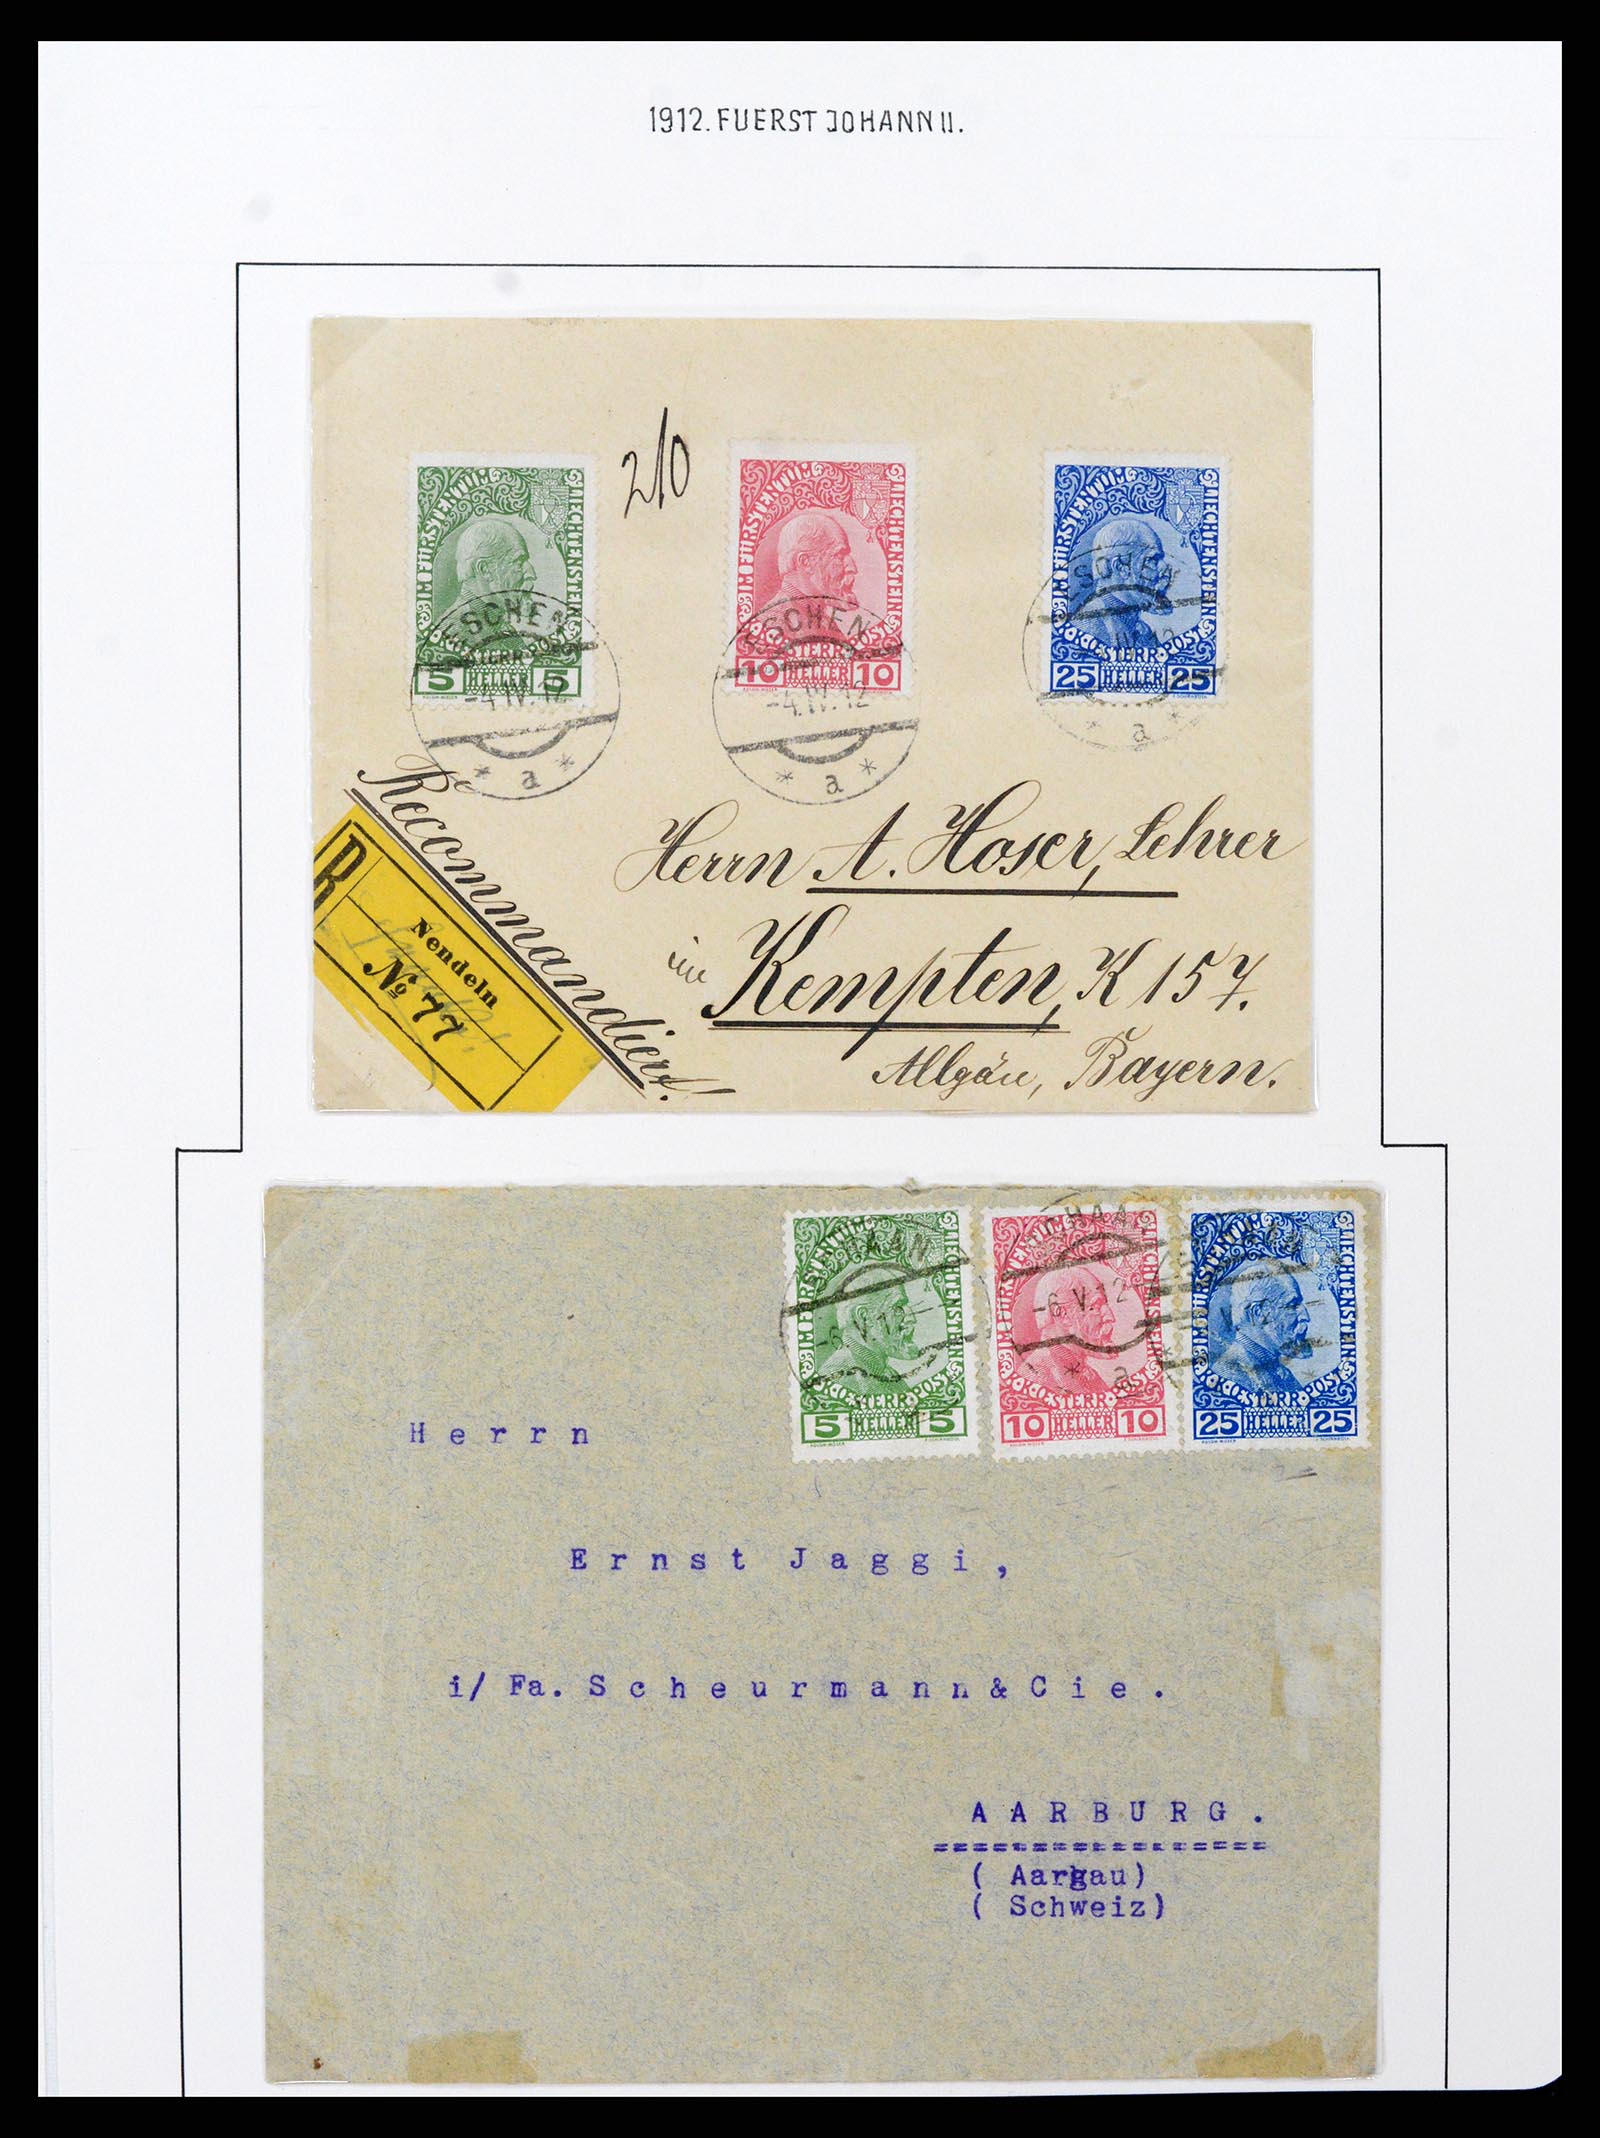 37150 0009 - Stamp collection 37150 Liechtenstein supercollection 1912-1962.